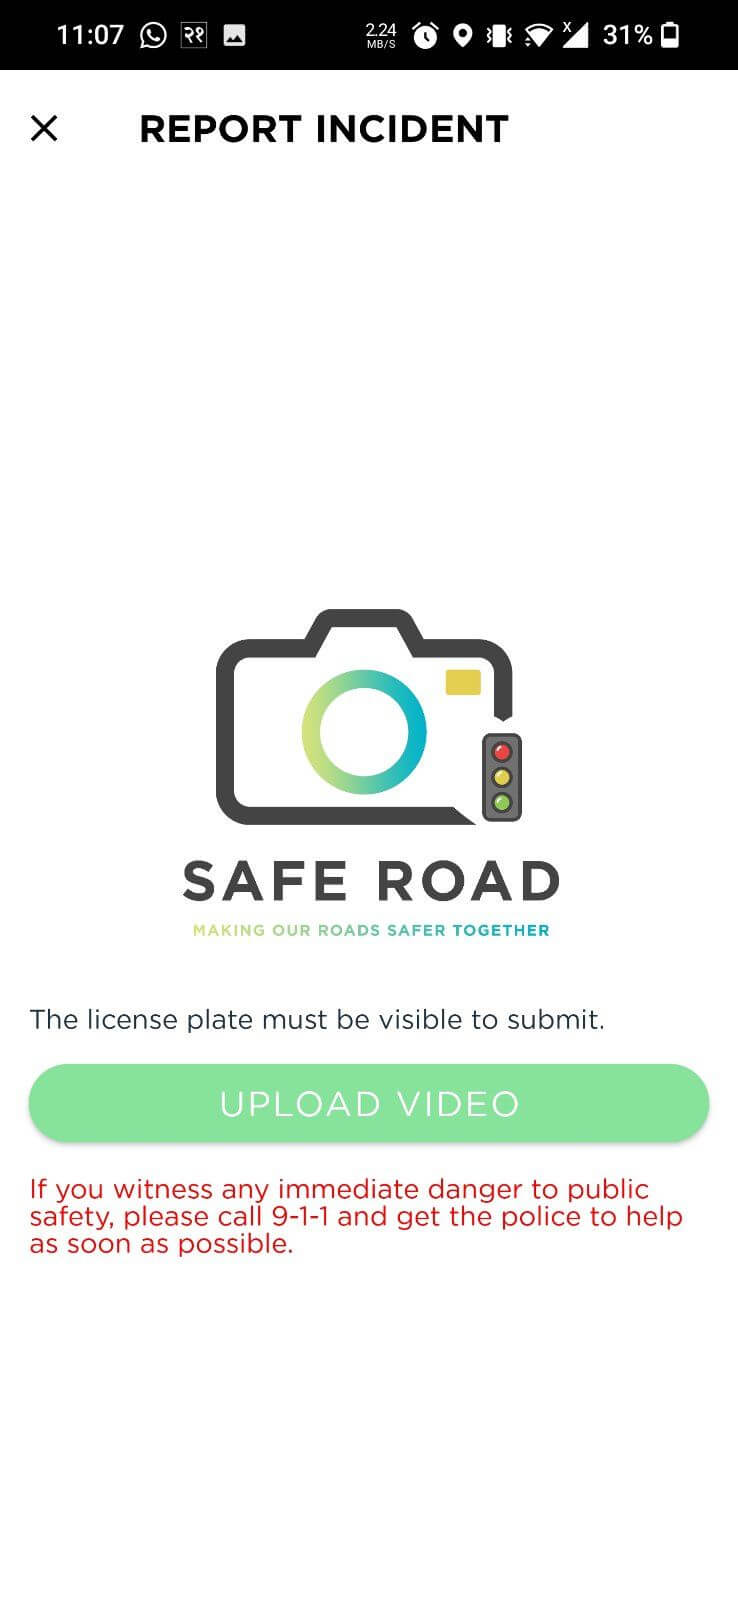 Safe Road image